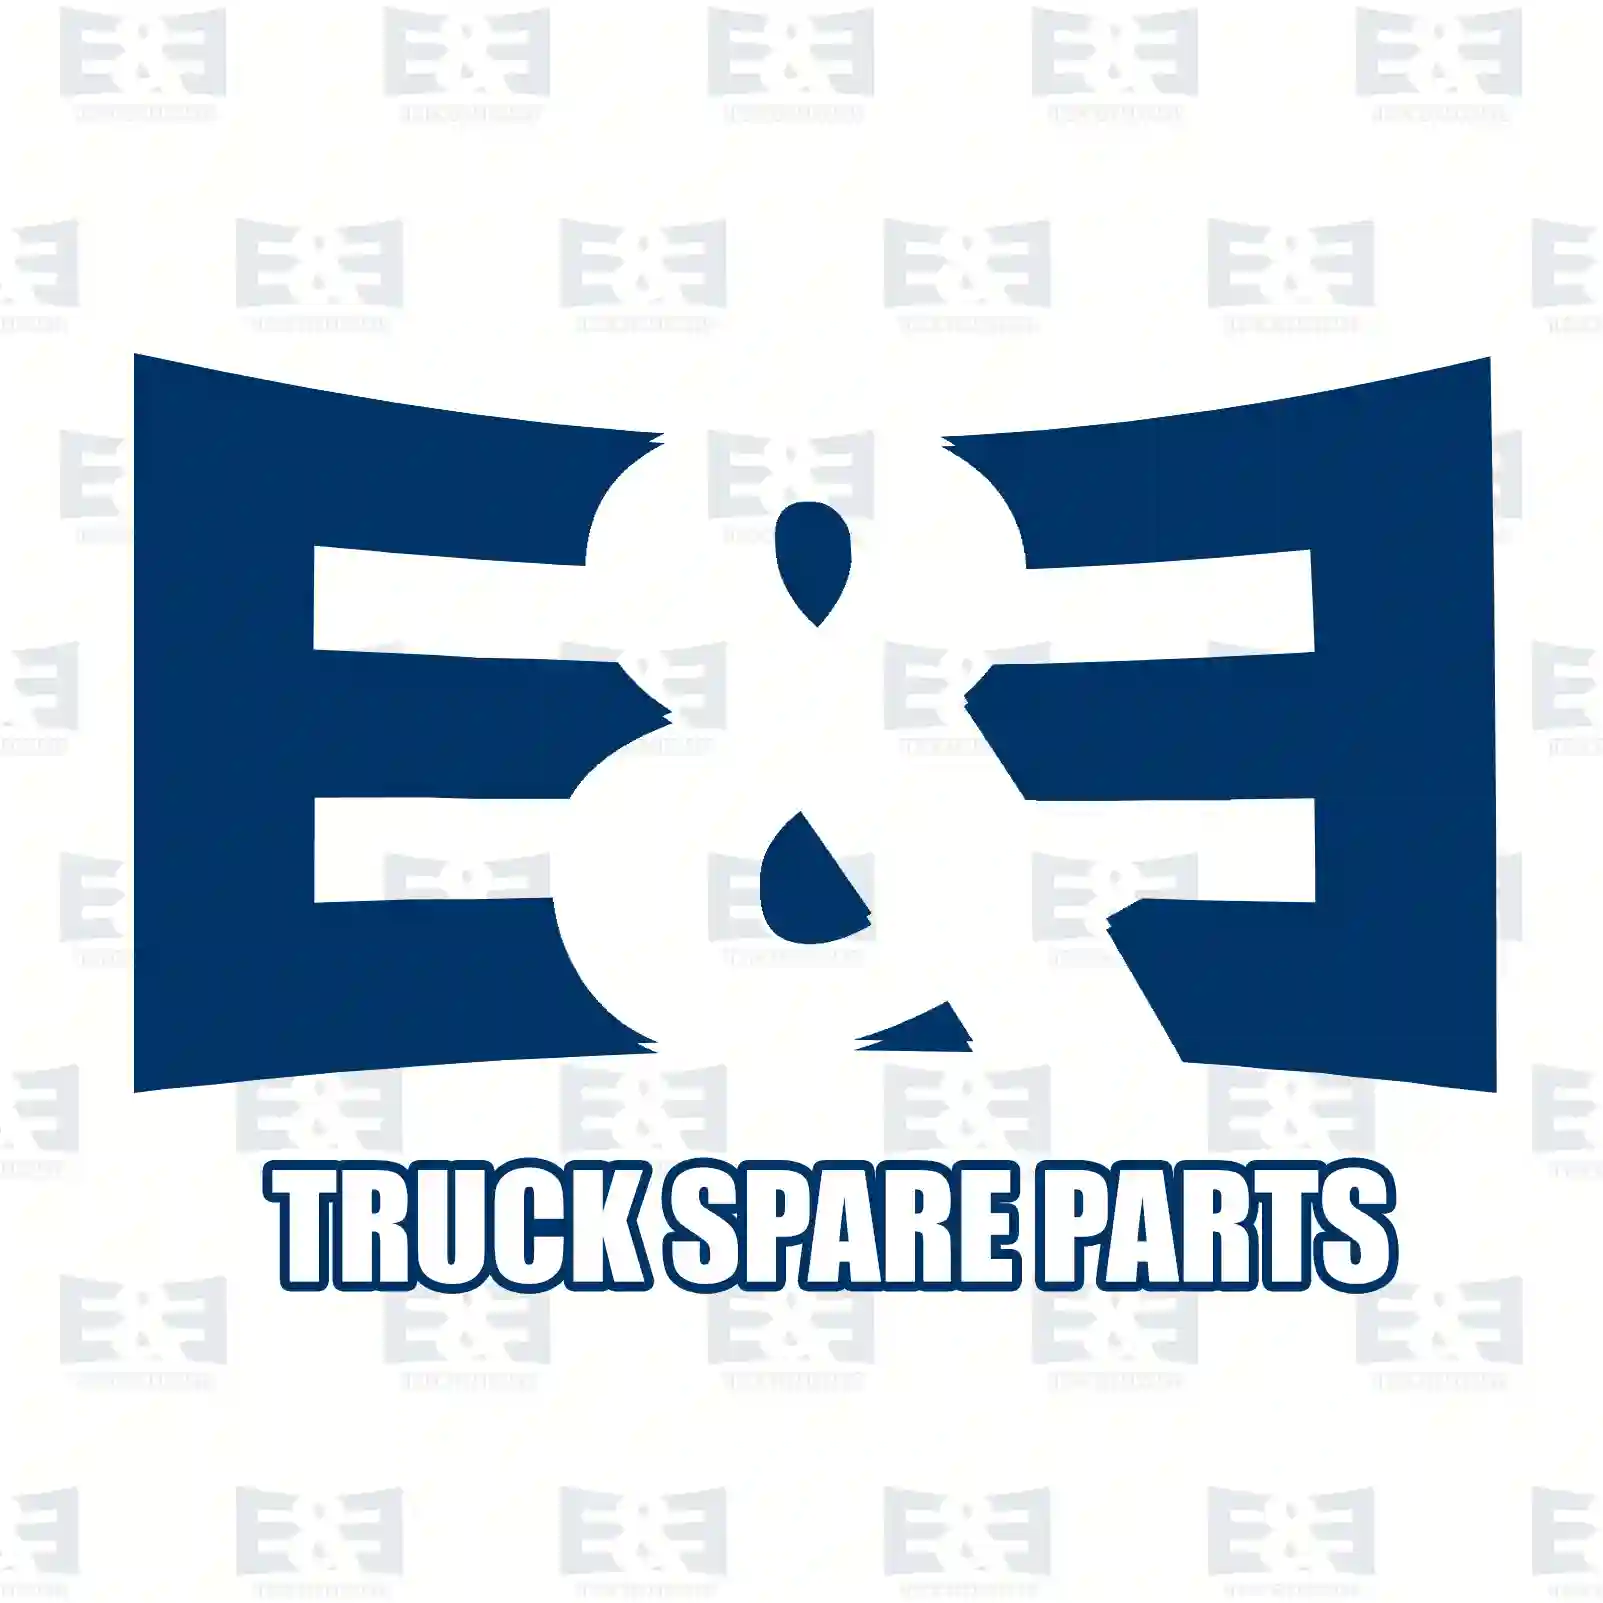 Light switch, 2E2298729, 1540673, 1900317, 2252076, 540673, ZG20099-0008 ||  2E2298729 E&E Truck Spare Parts | Truck Spare Parts, Auotomotive Spare Parts Light switch, 2E2298729, 1540673, 1900317, 2252076, 540673, ZG20099-0008 ||  2E2298729 E&E Truck Spare Parts | Truck Spare Parts, Auotomotive Spare Parts